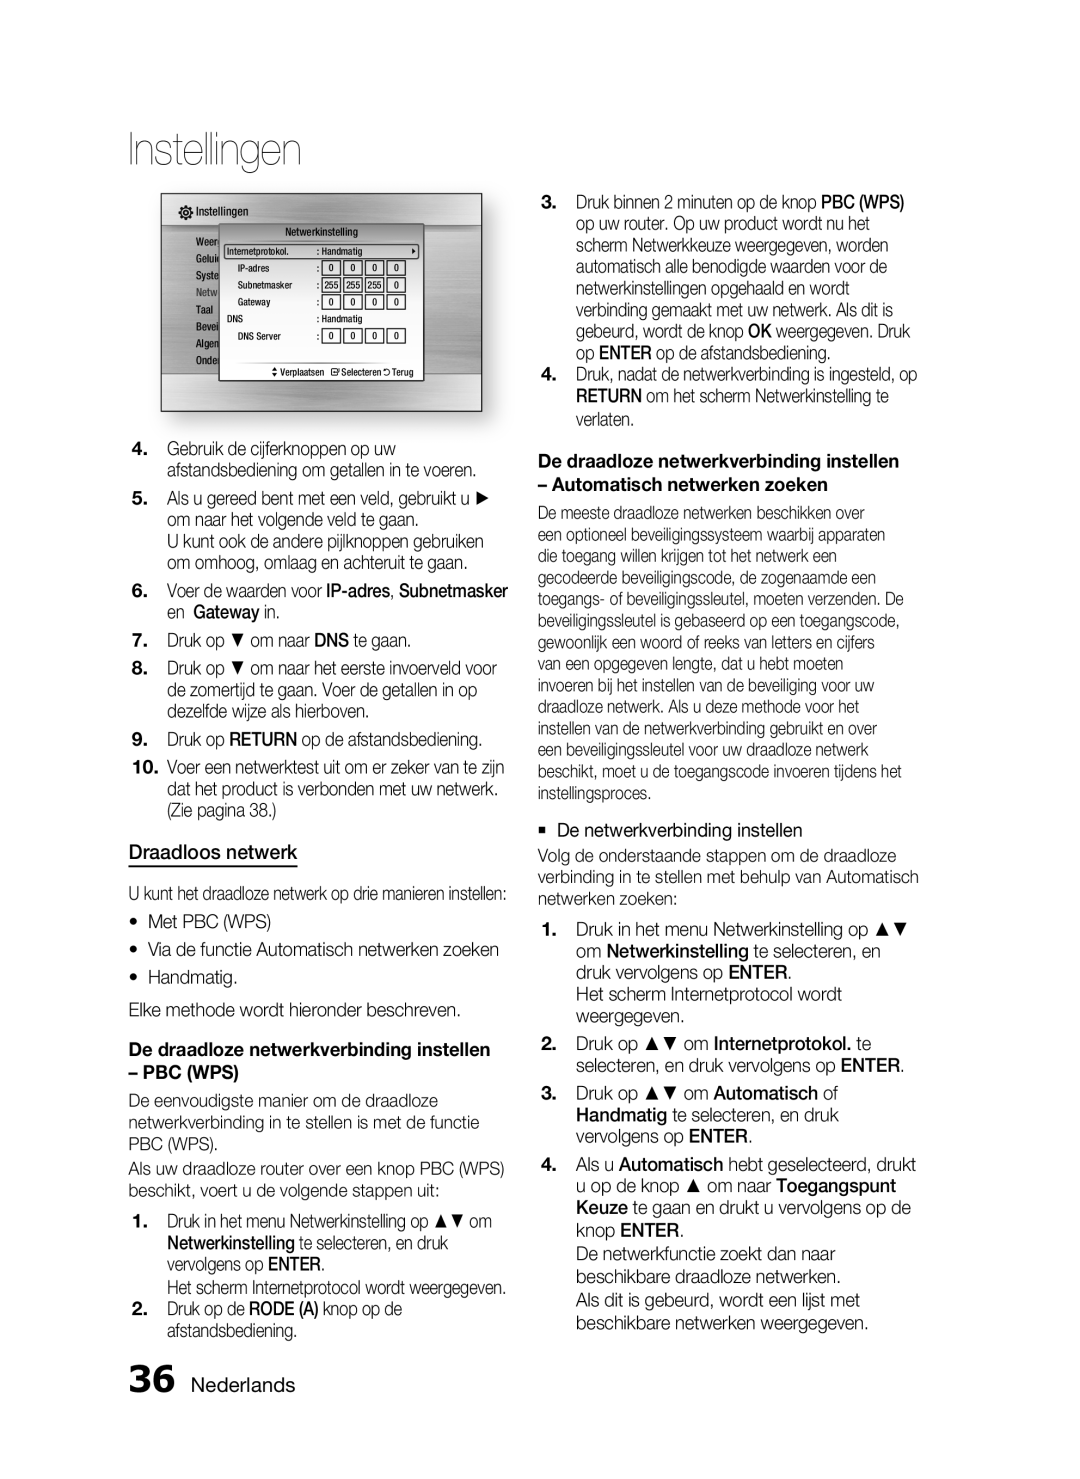 Samsung HT-C6200/XEF manual Draadloos netwerk, Nederlands, De draadloze netwerkverbinding instellen PBC WPS, Instellingen 